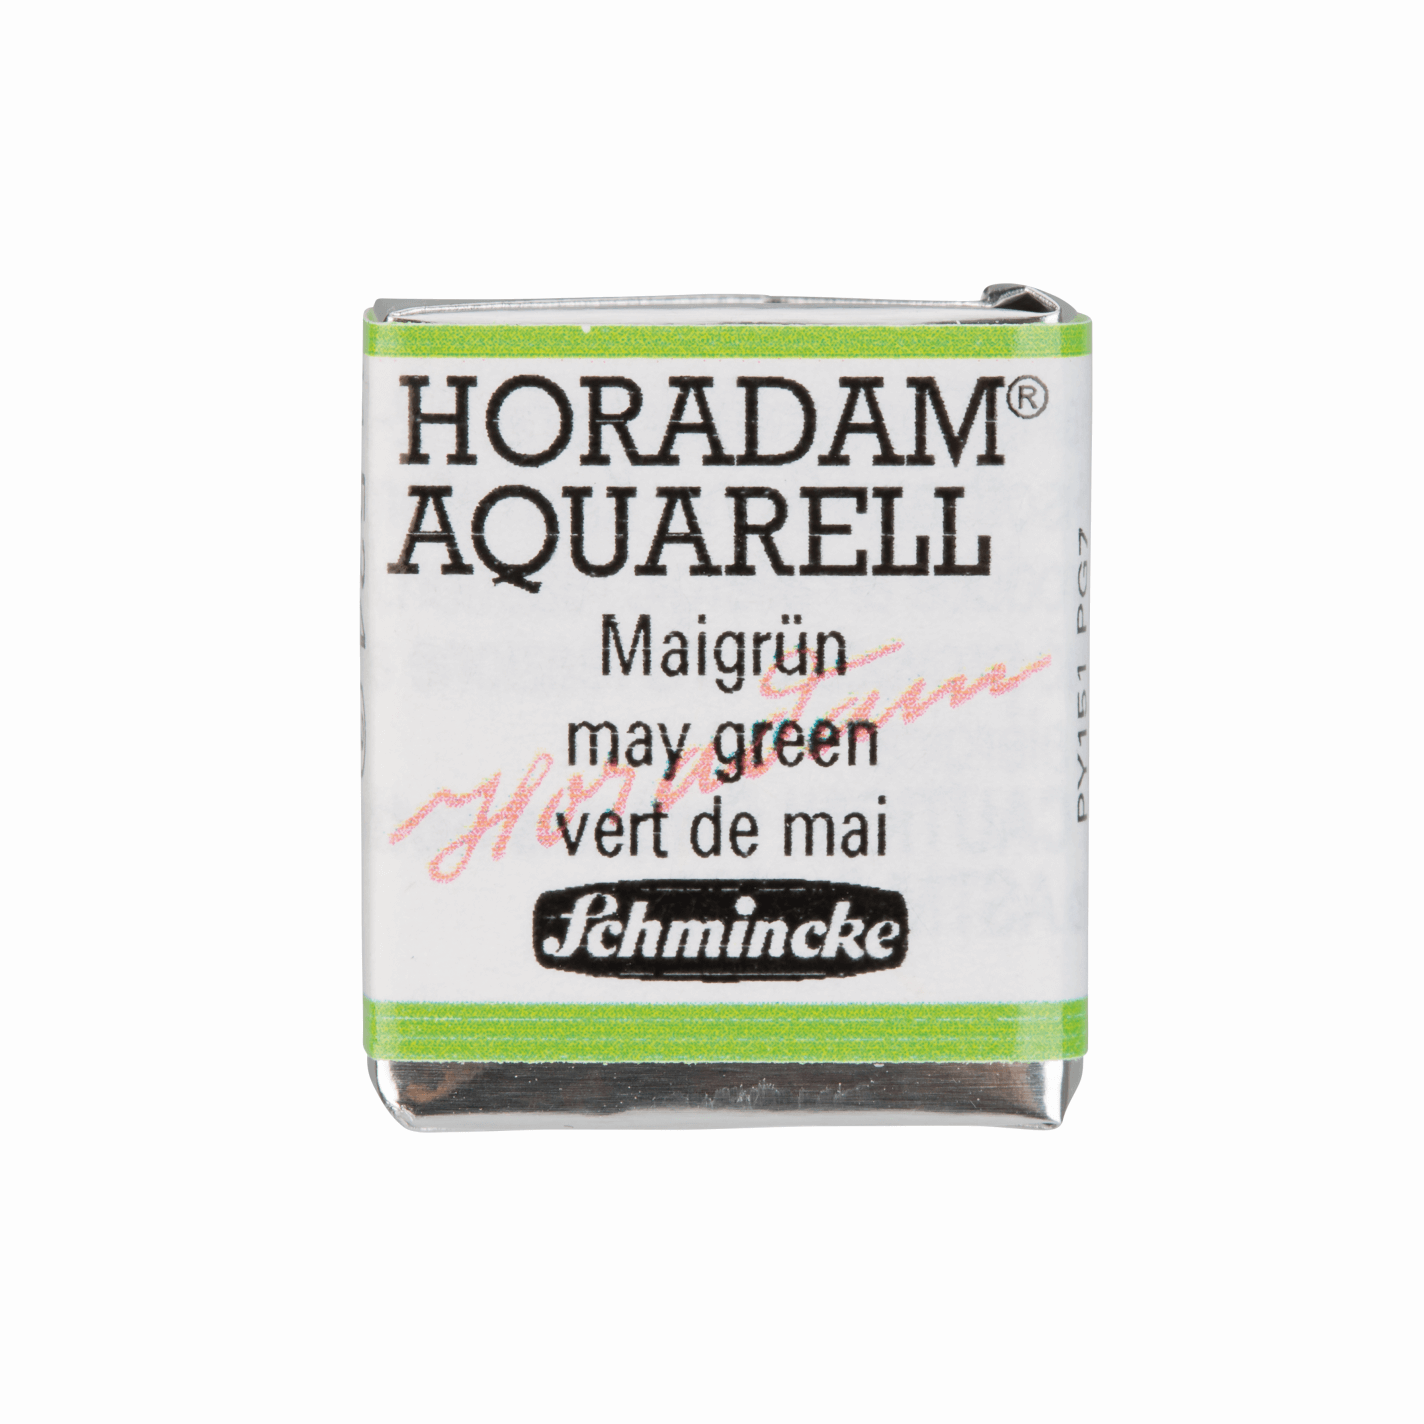 Schmincke Horadam Aquarell pans 1/2 pan May Green